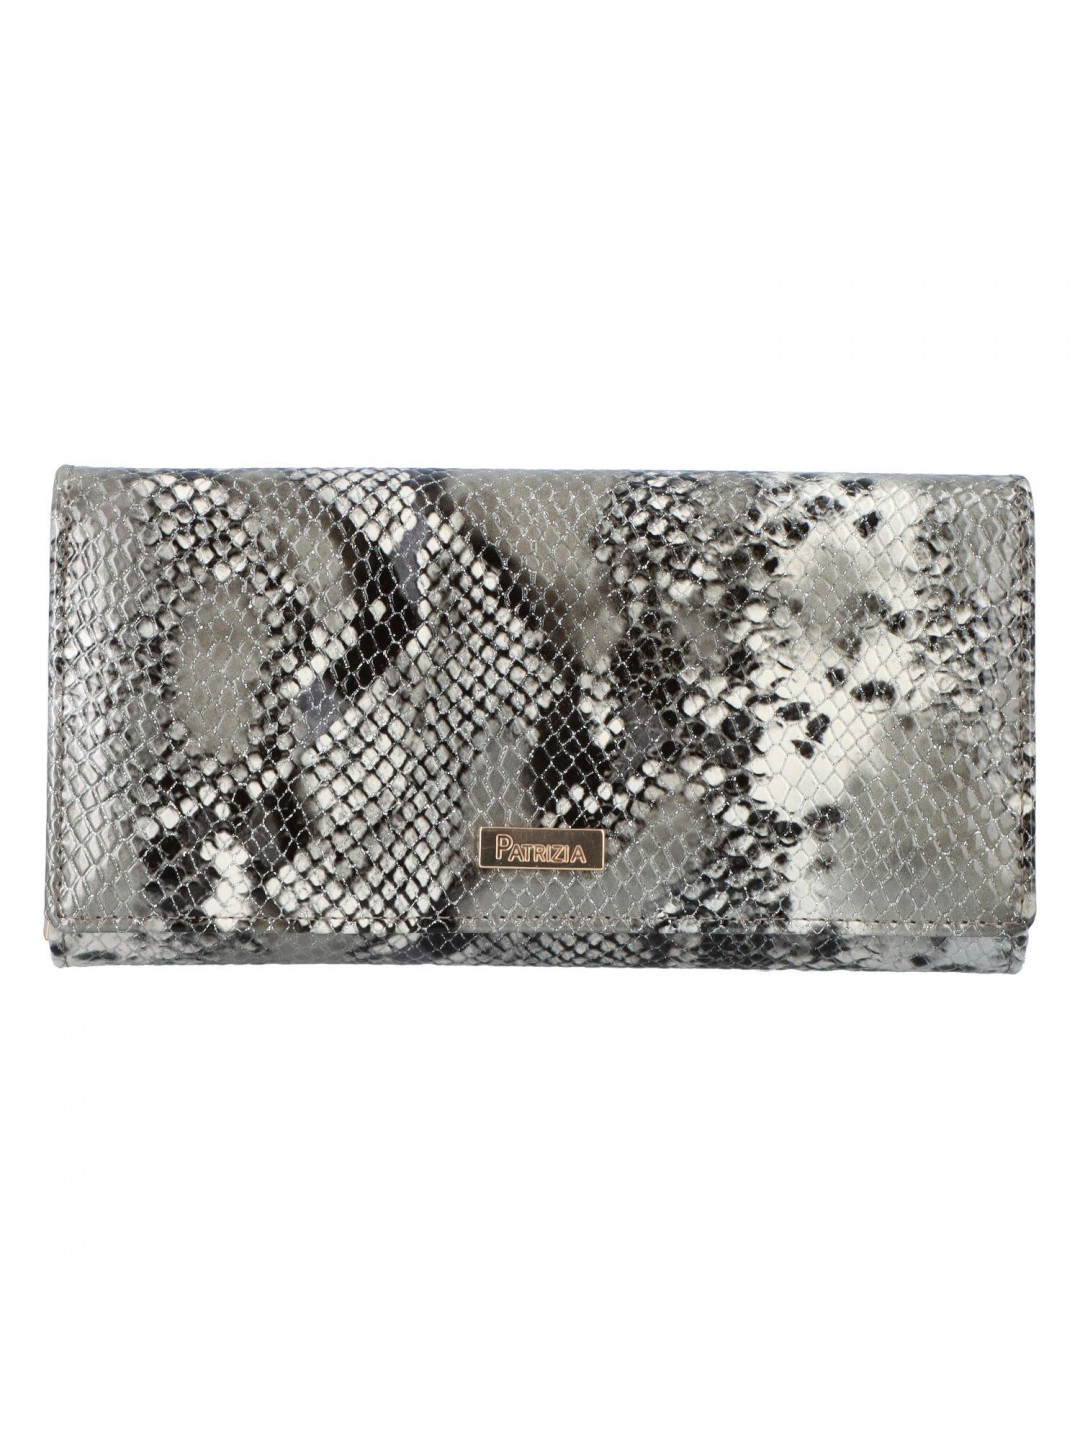 Velká dámská luxusní kožená peněženka Sadrey šedá se zvířecím hadím motivem